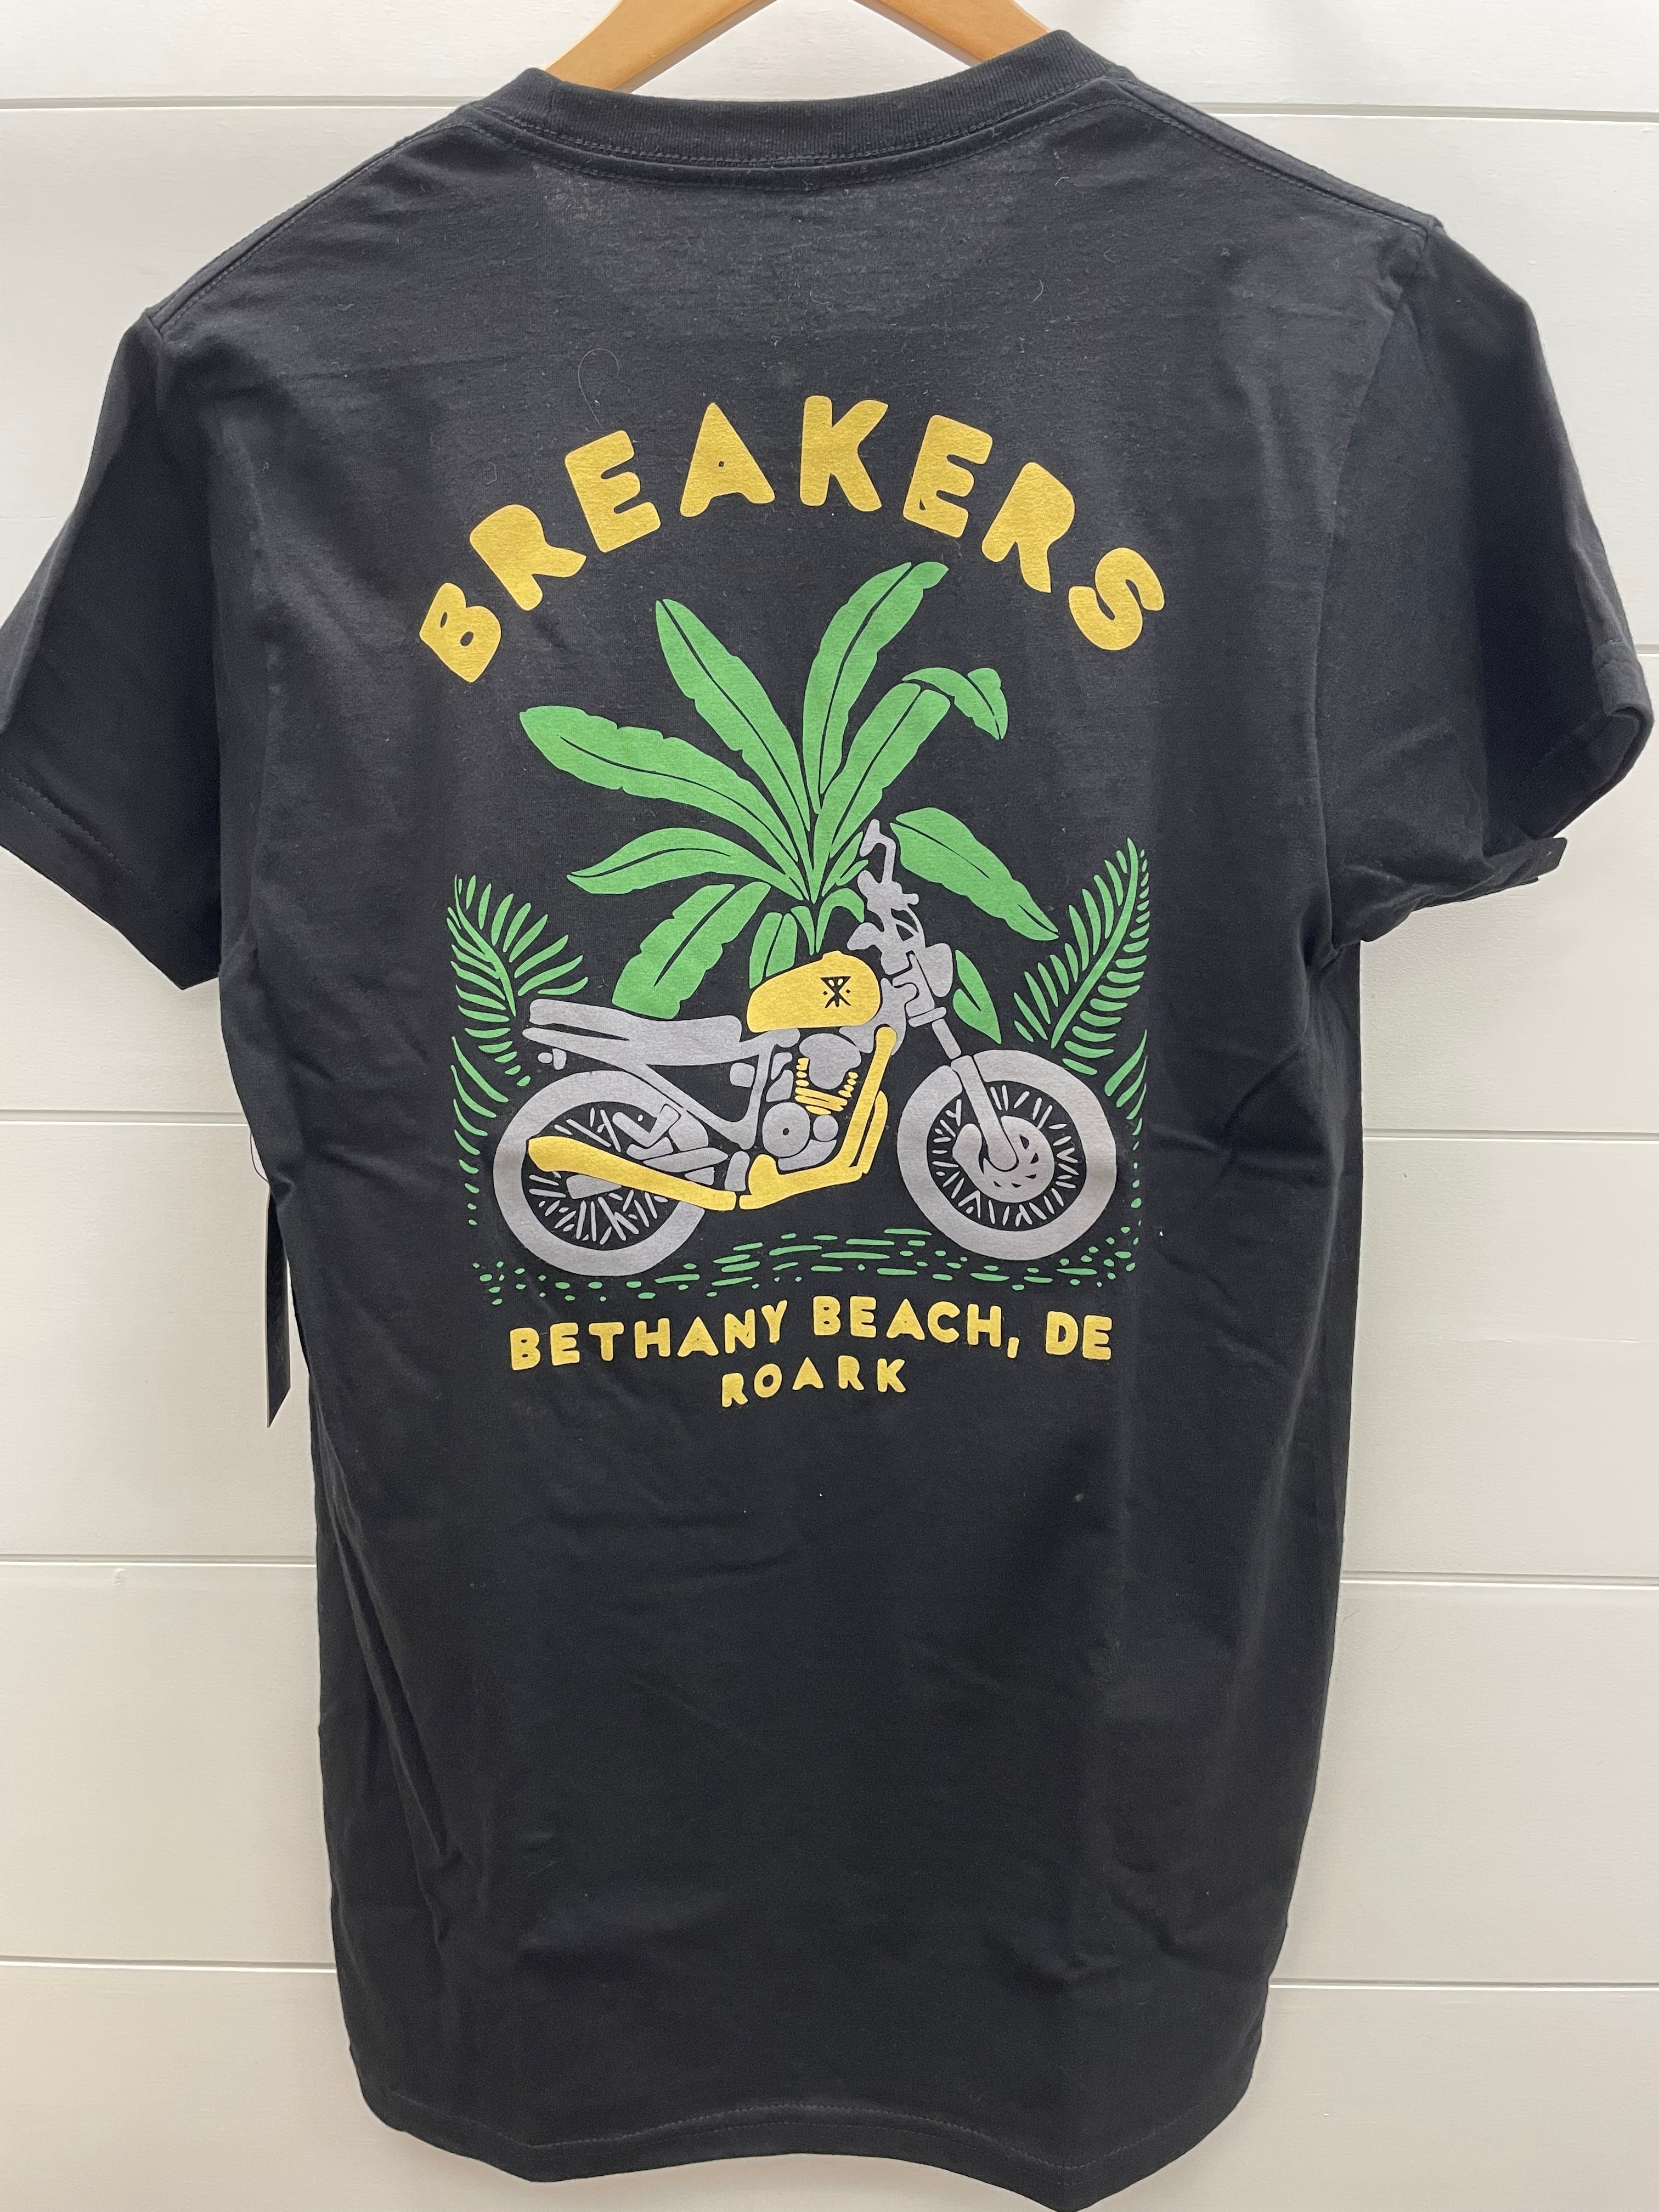 Roark x Breakers Short Sleeve T-Shirt